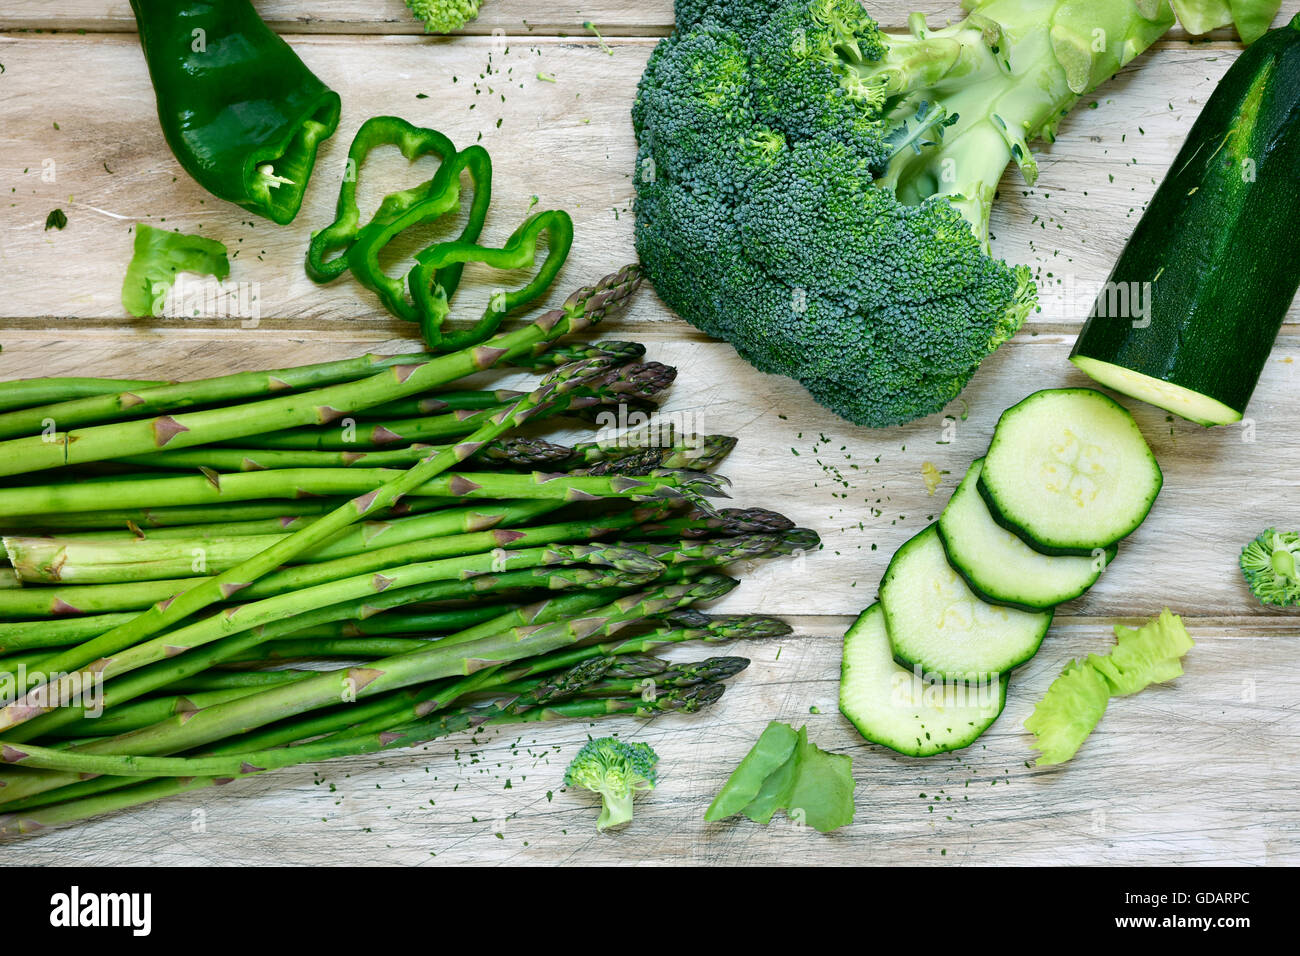 Tourné à angle élevé de certaines matières premières différentes légumes verts, comme le poivron vert, les asperges, le brocoli ou les courgettes, sur un blanc rustique Banque D'Images